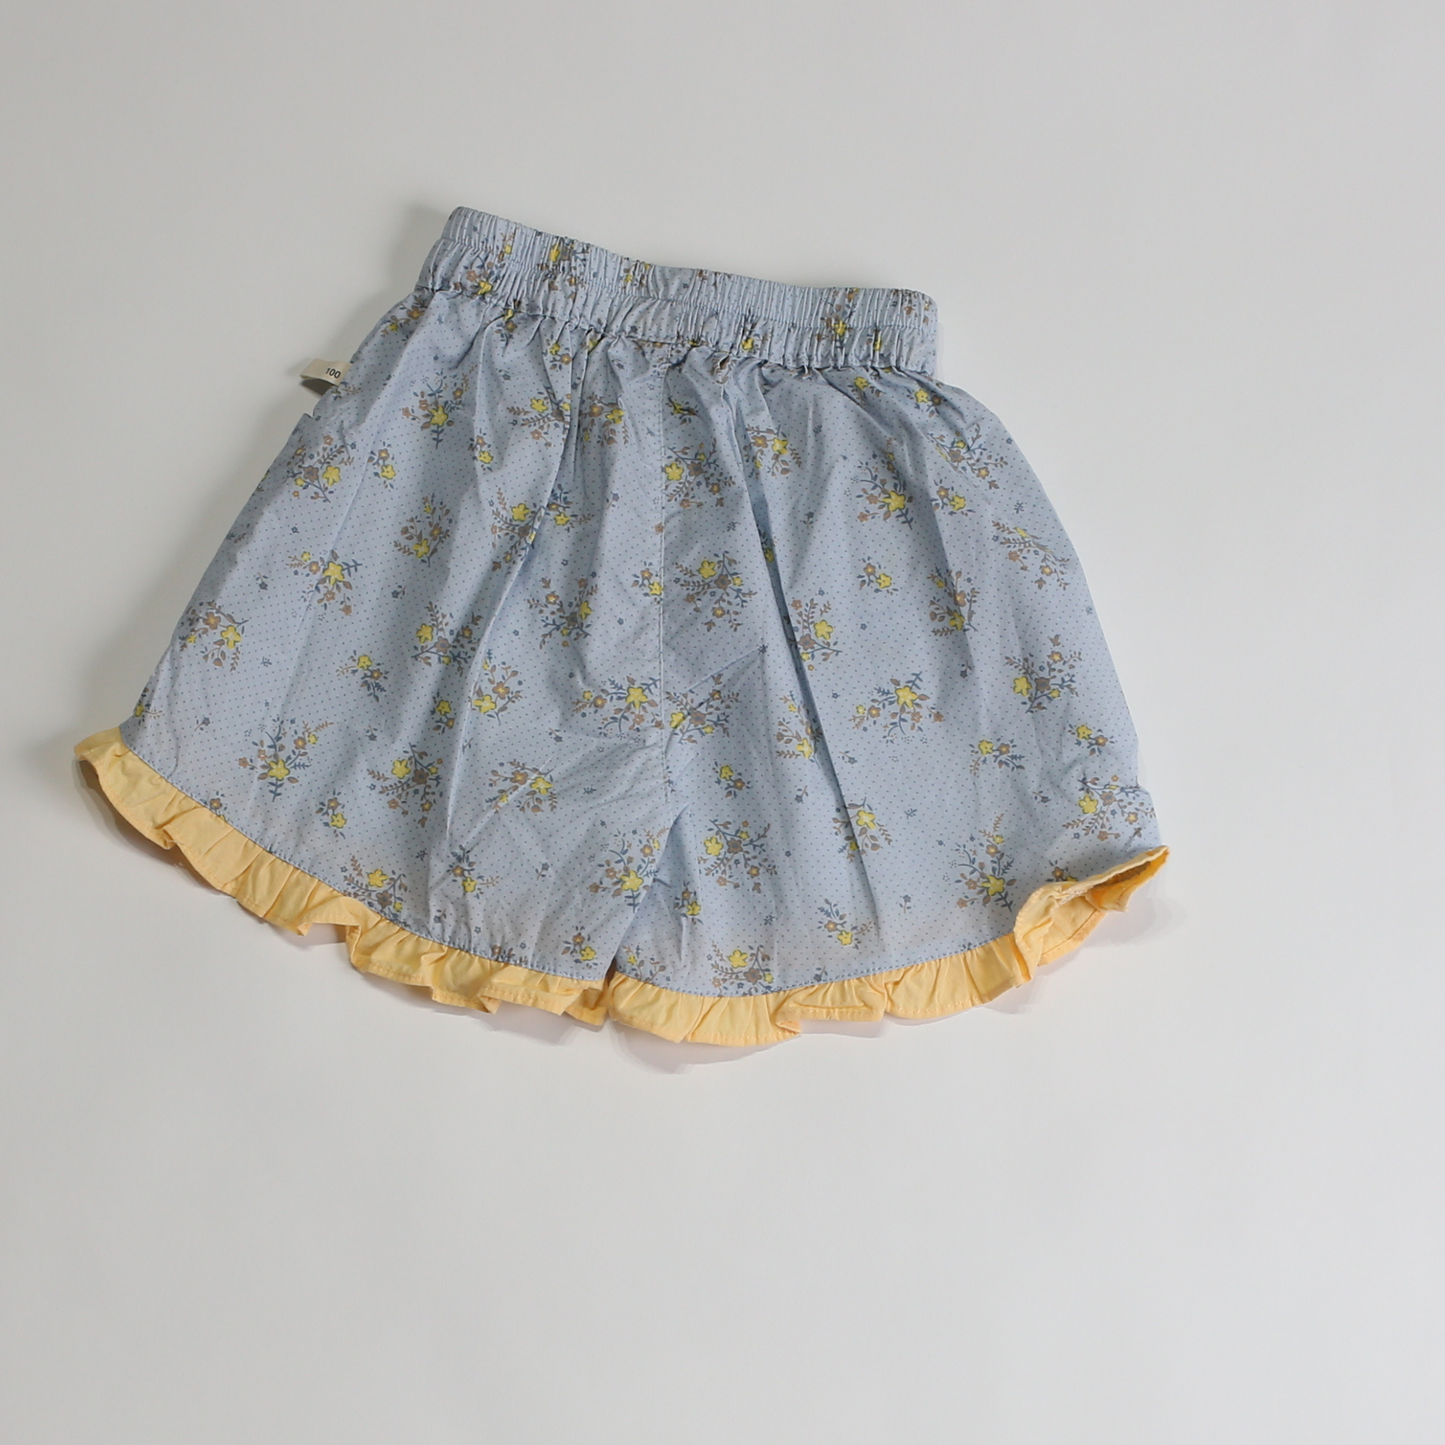 フラワー フリル ショートパンツ / flower frill short pants (こども服) - kids clothes shop GUZUGUZU